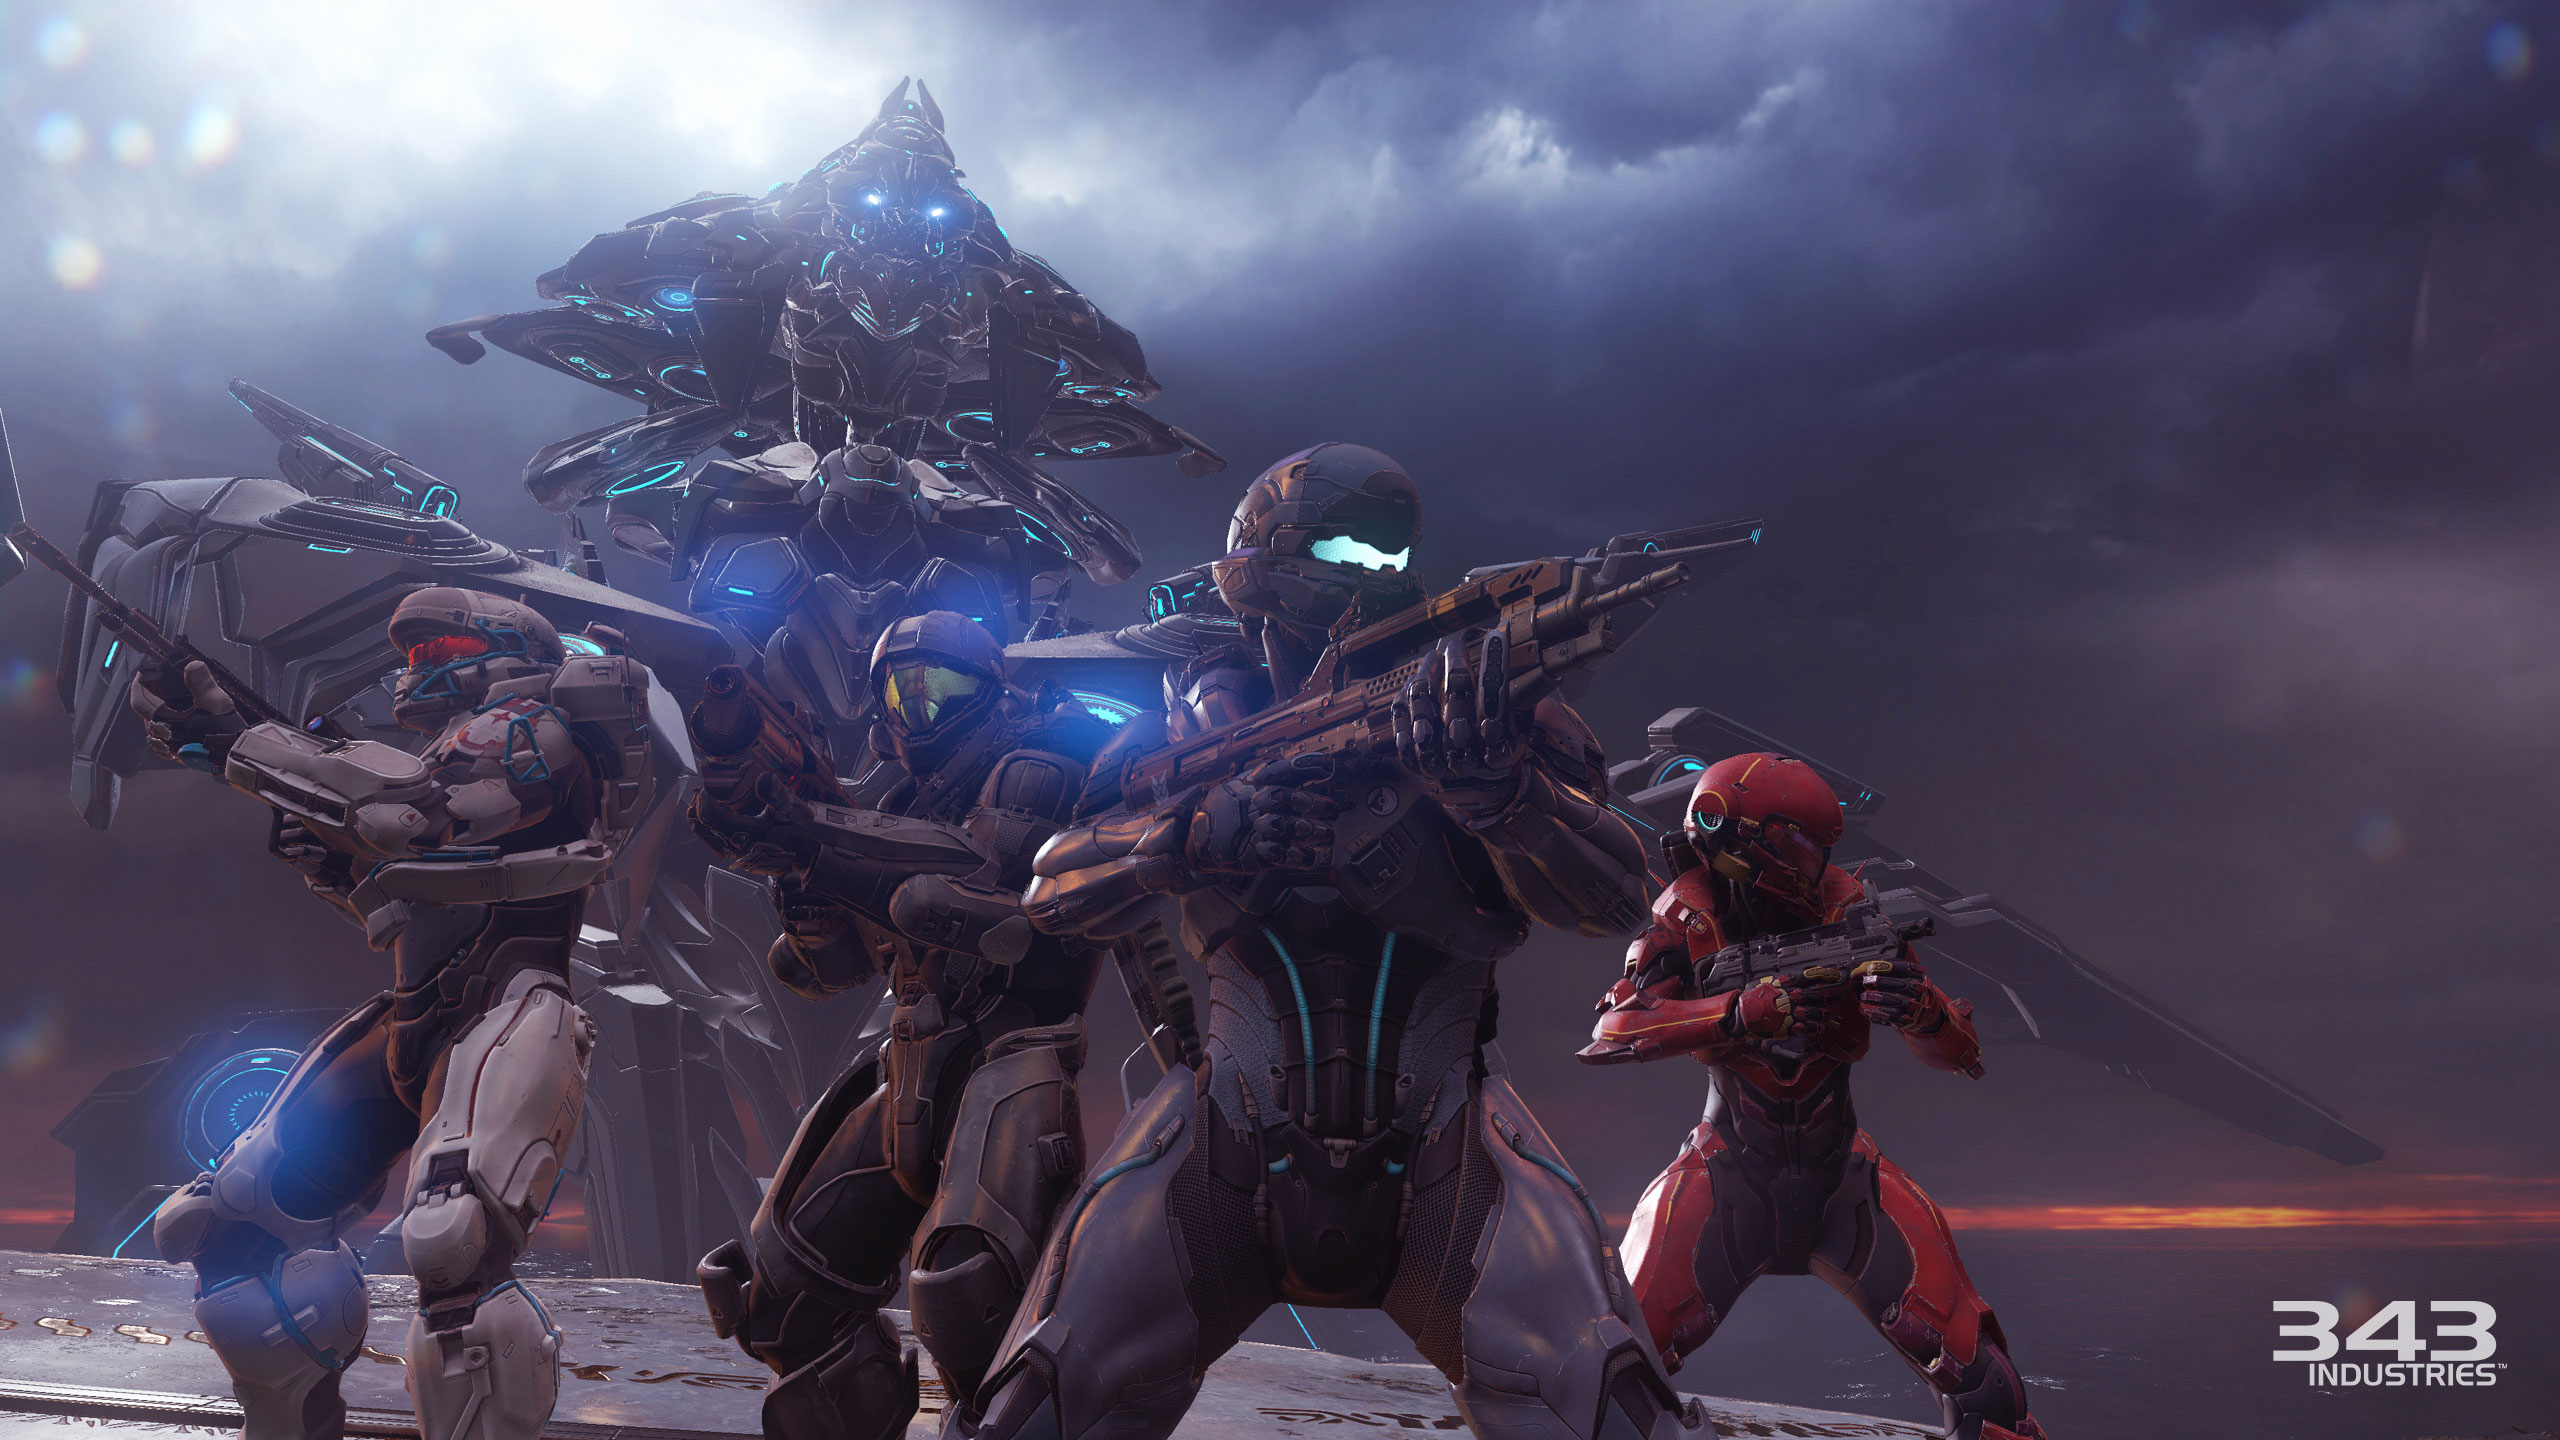 La campaña de Halo 5 reequilibra su dificultad según el feedback de los fans.